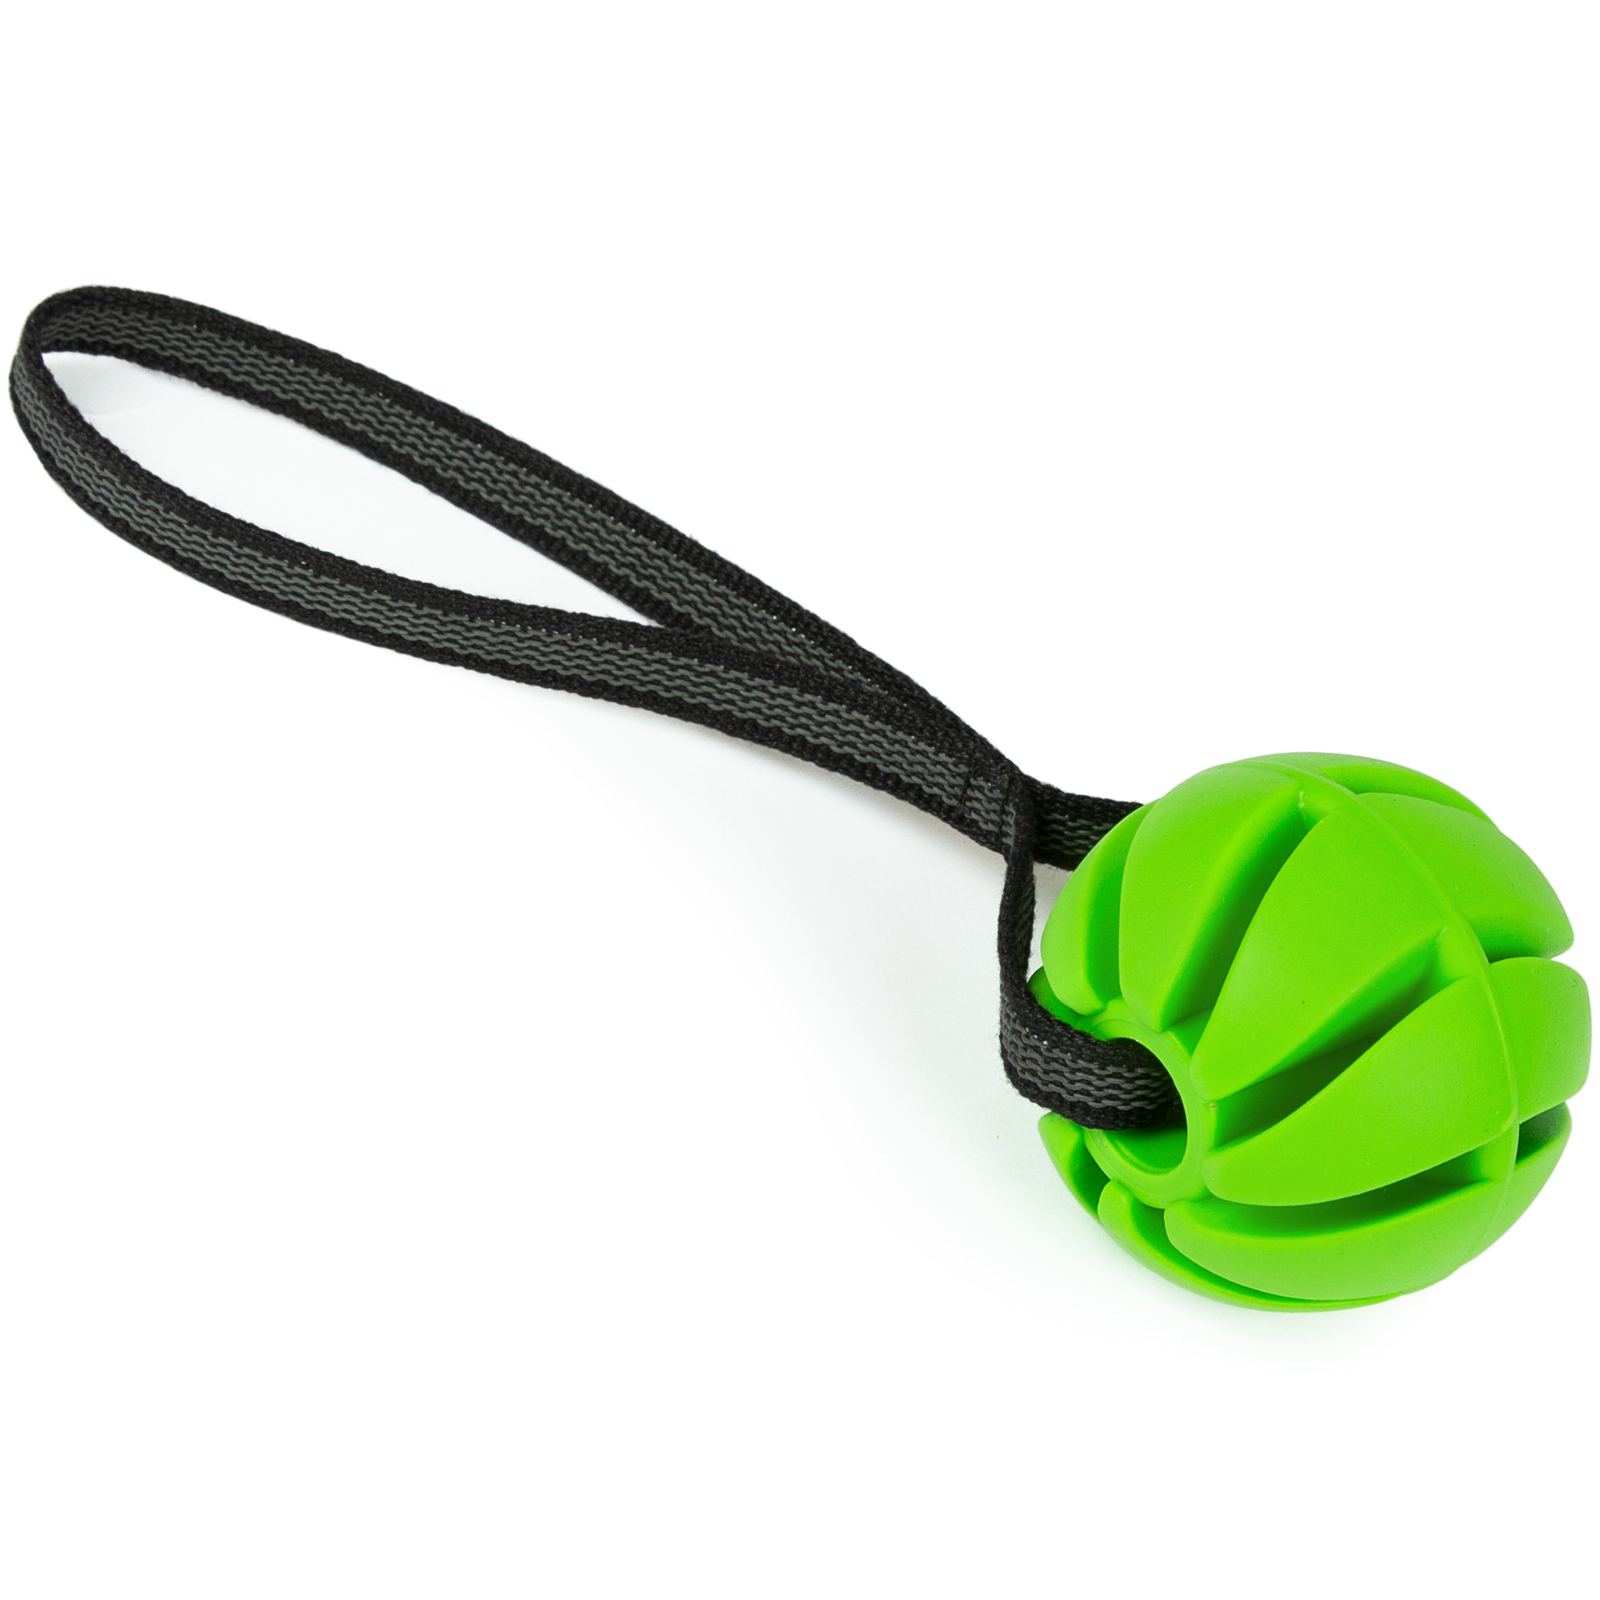 CopcoPet - Hundeball spirale mit gummierte Handschlaufe Grün 6 cm